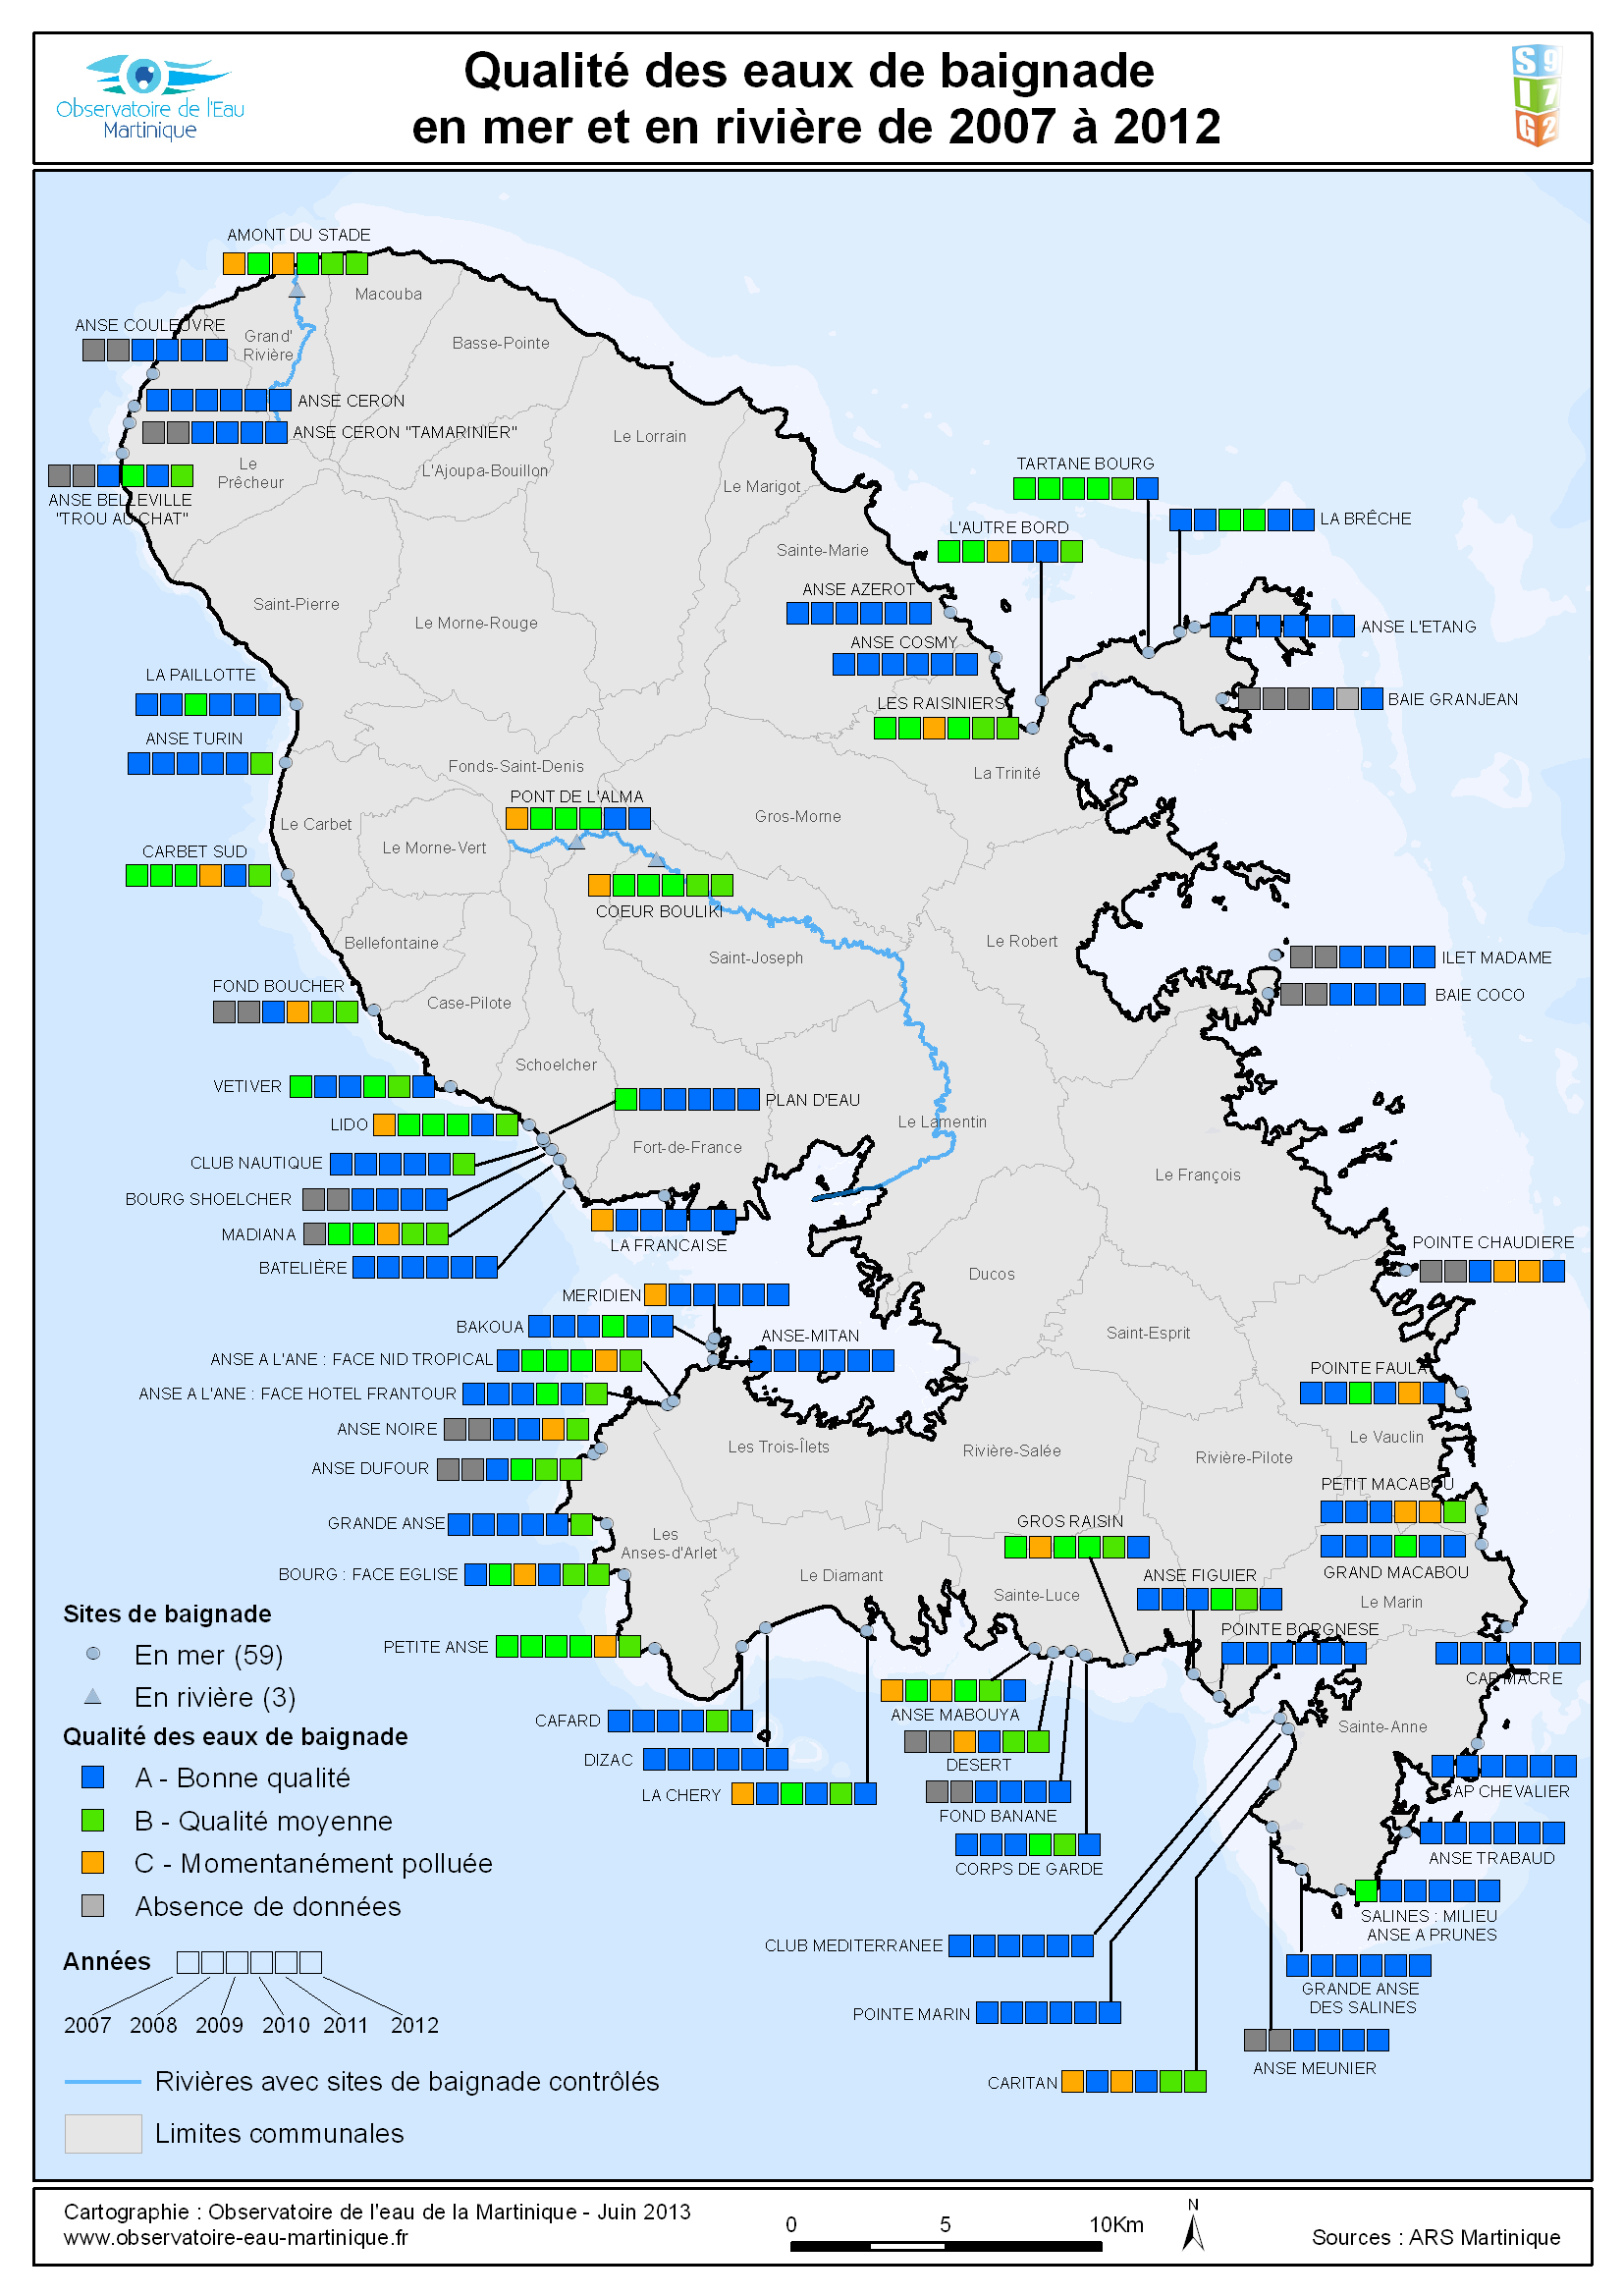 Qualité des eaux de baignade de Martinique - Année 2007 à 2012